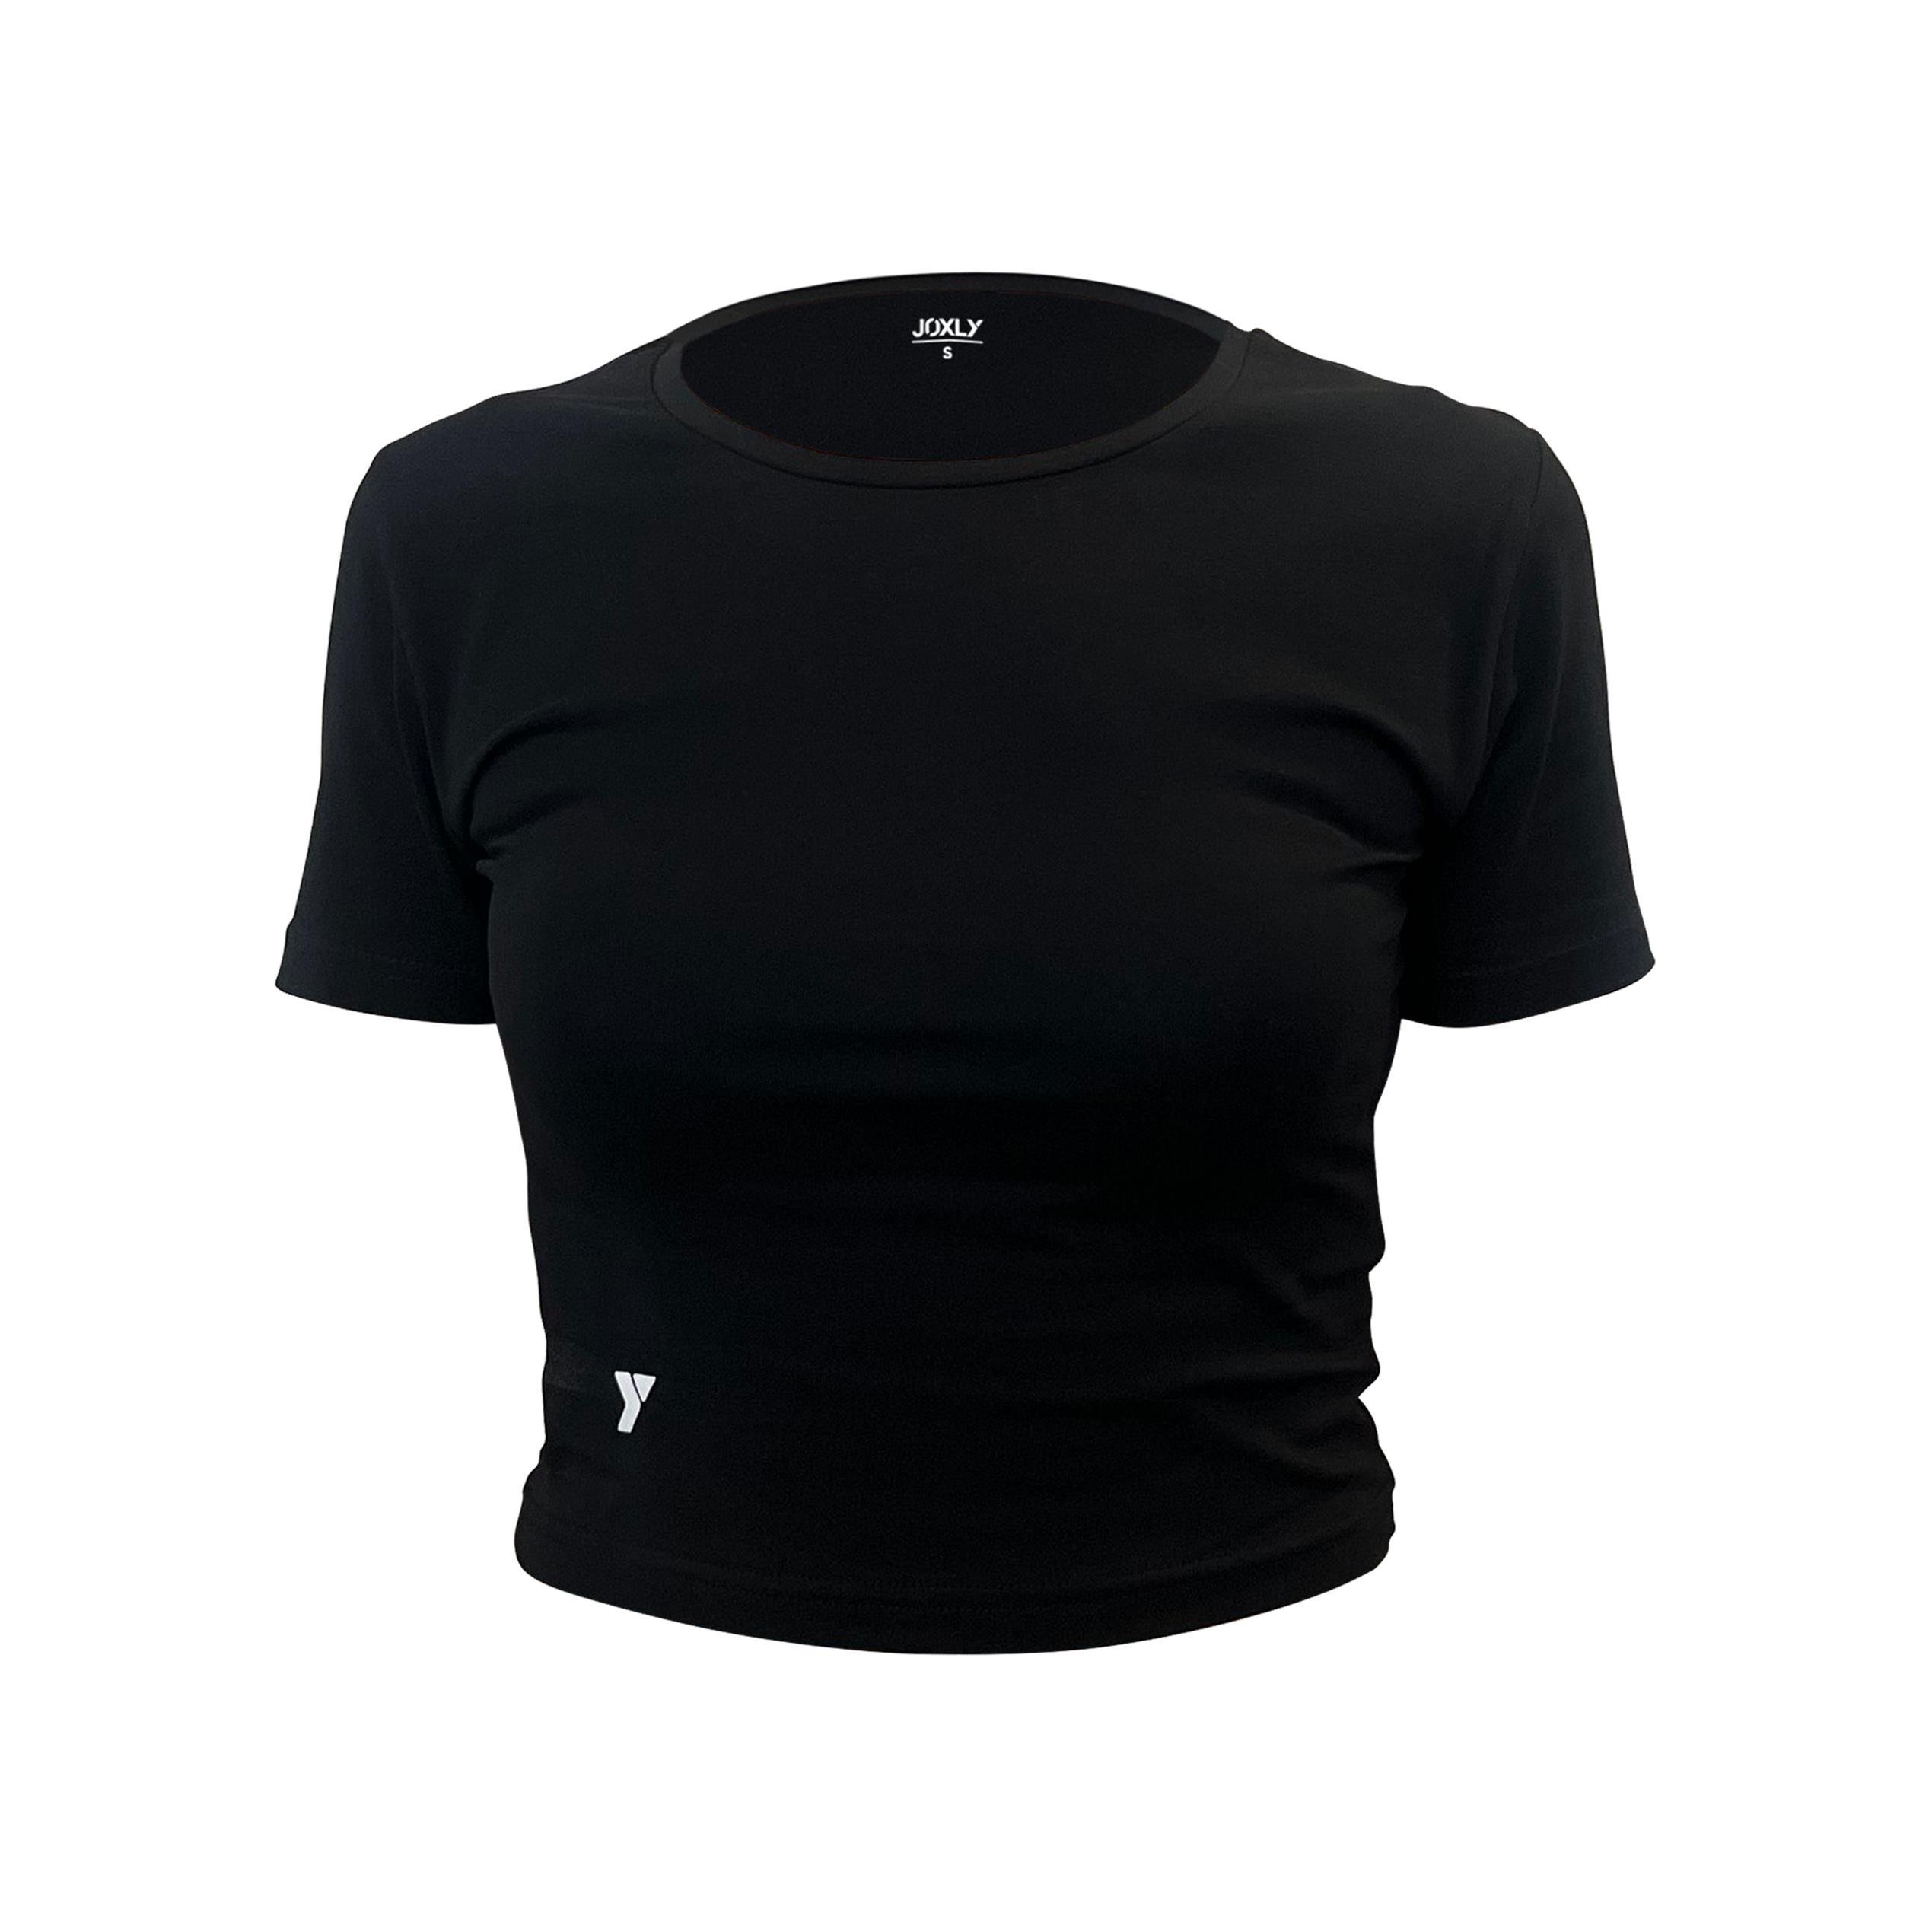 Siyah Kısa Kollu Basic Crop Tişört